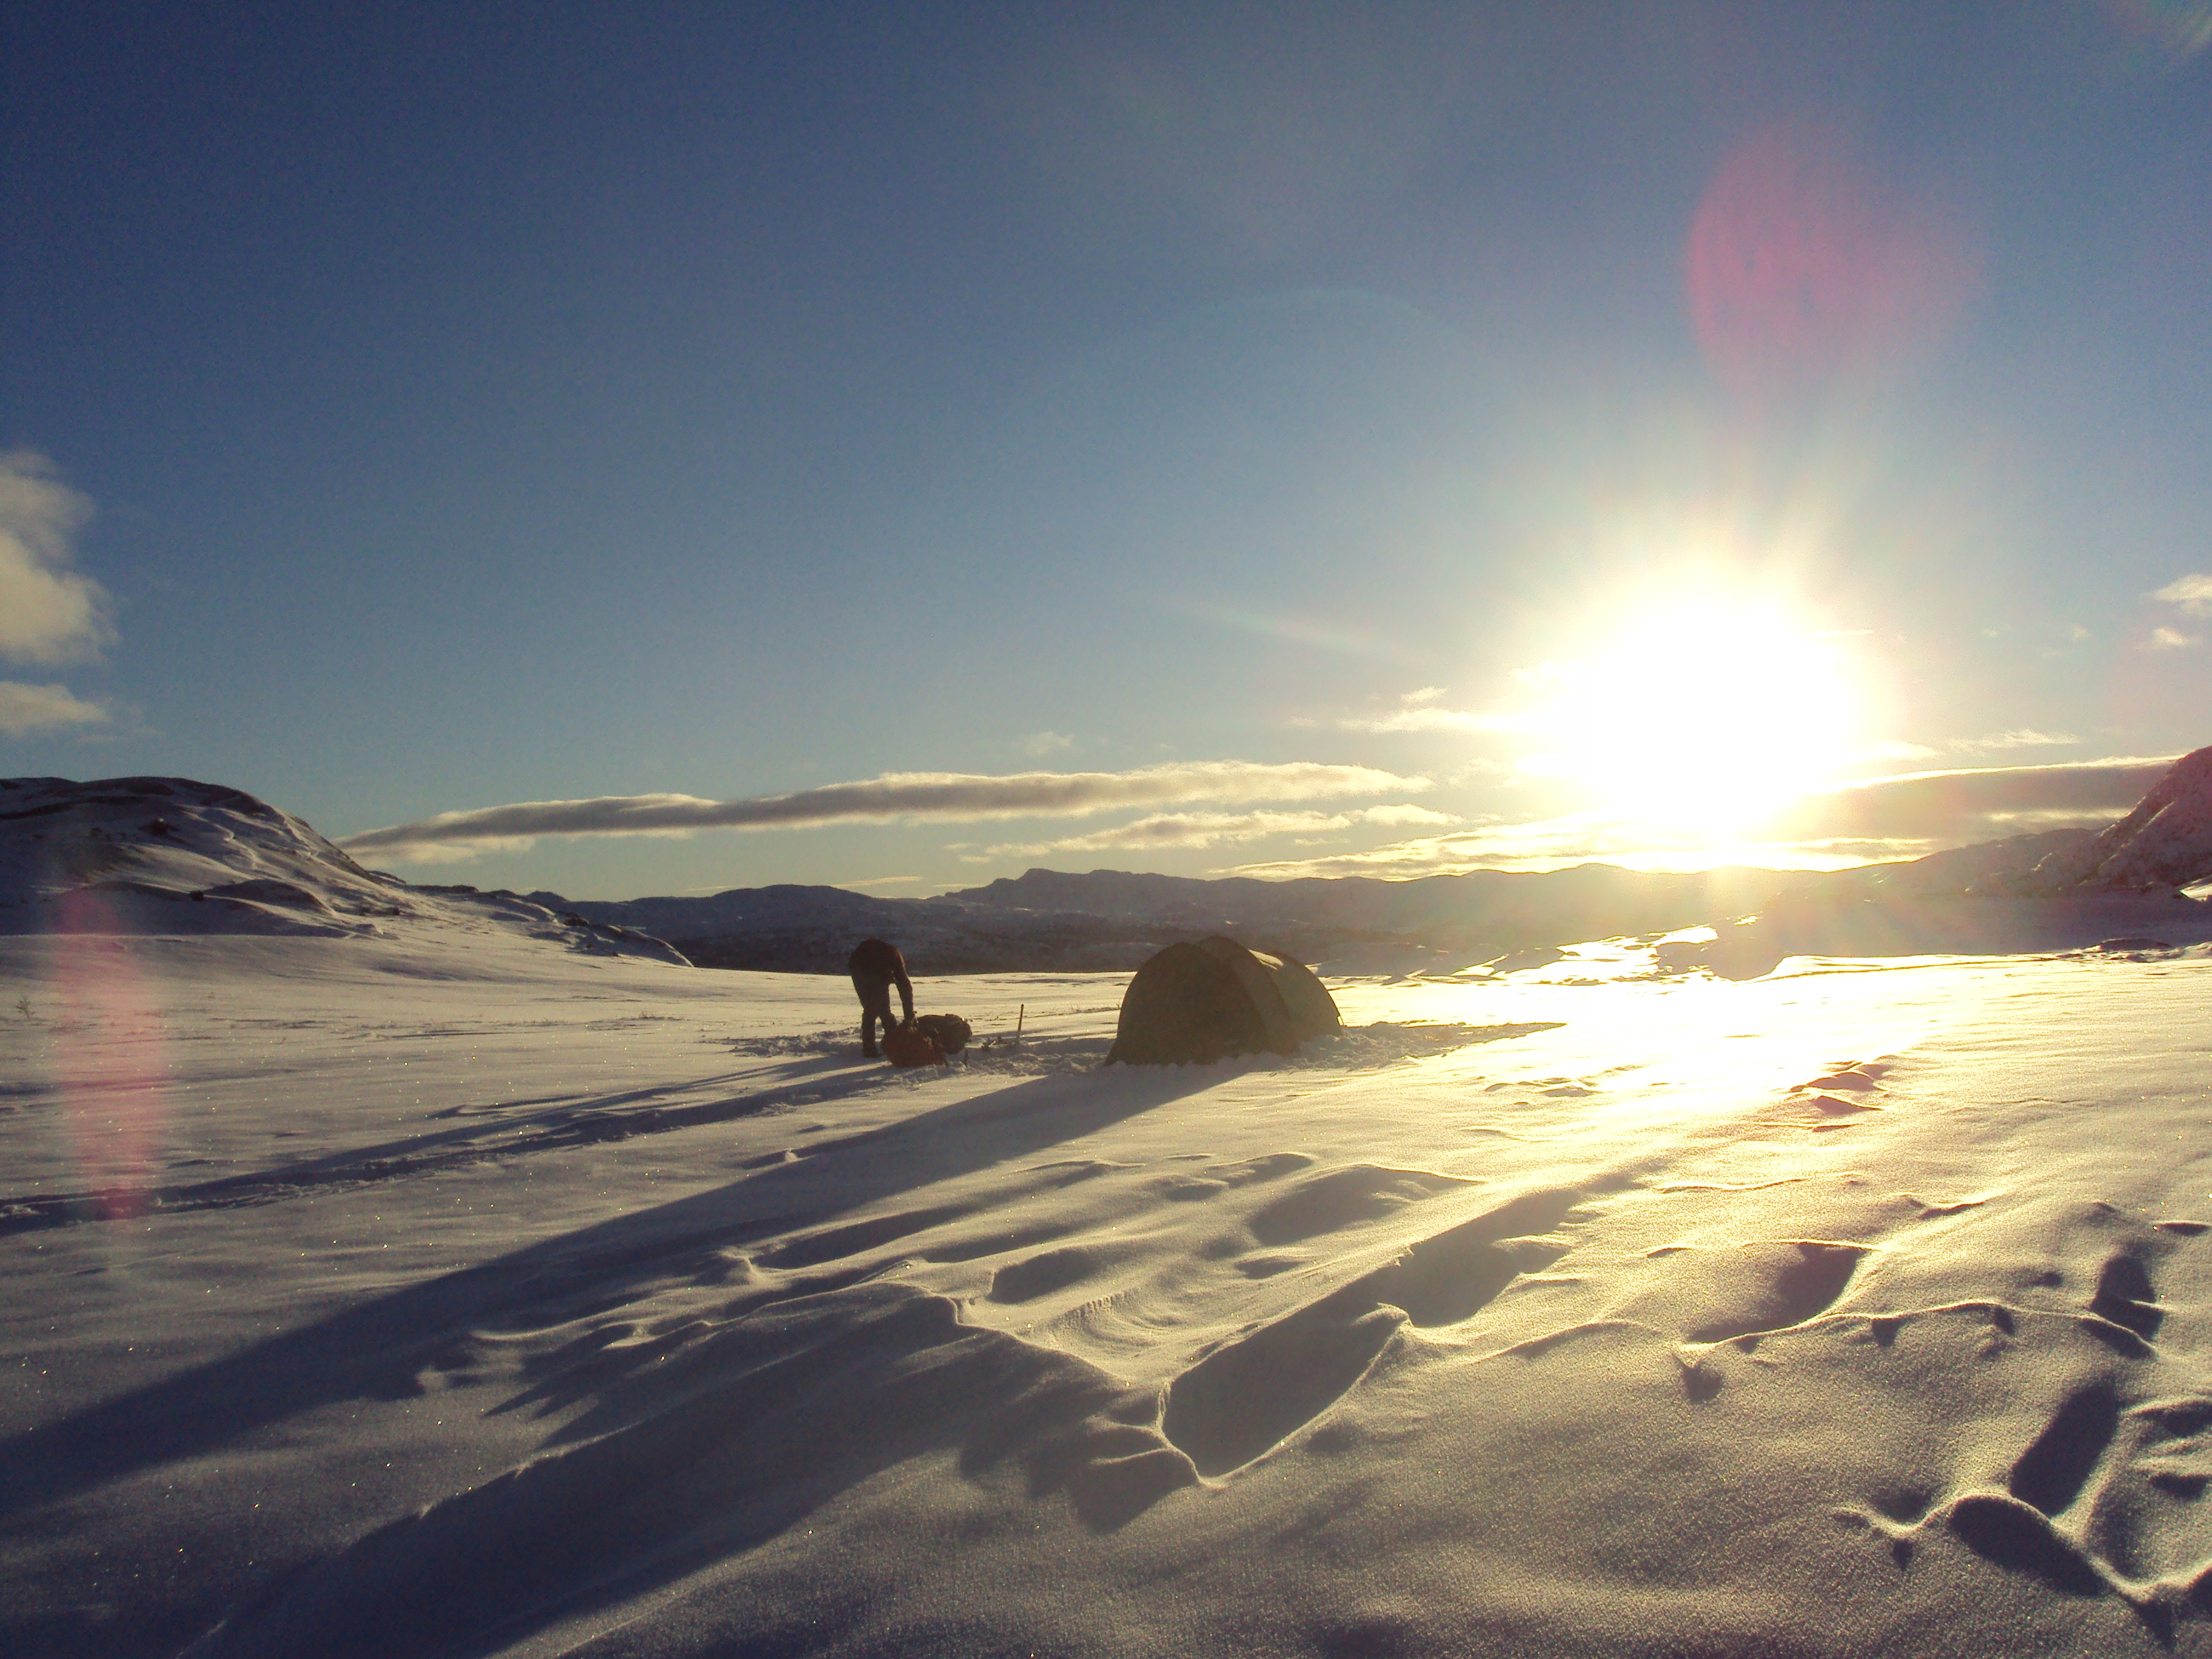 Noorwegen: sneeuwschoenwandelen op de Hardangervidda